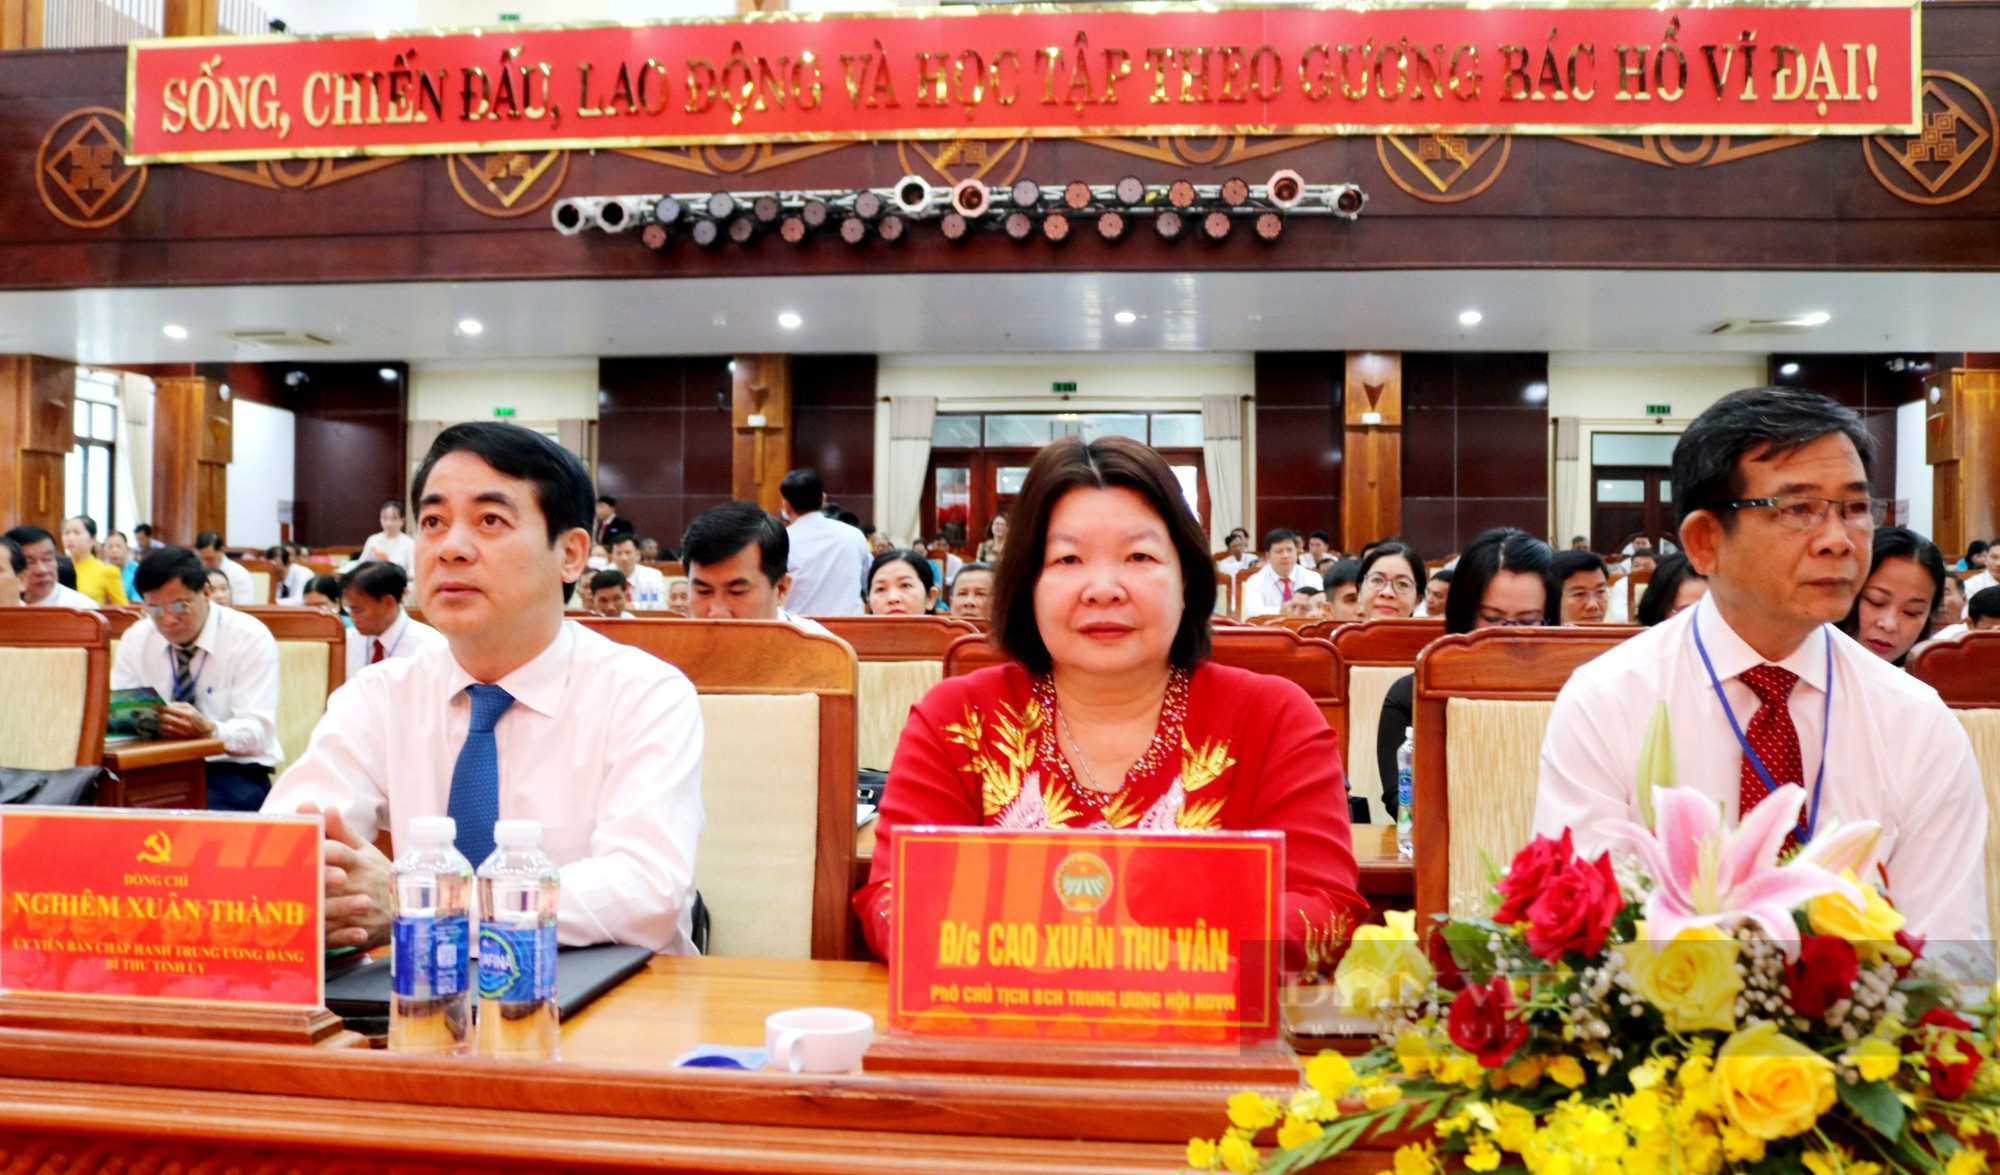 Đại hội Đại biểu Hội Nông dân tỉnh Hậu Giang lần thứ X: Bầu 29 đại biểu vào Ban Chấp hành khoá mới - Ảnh 1.